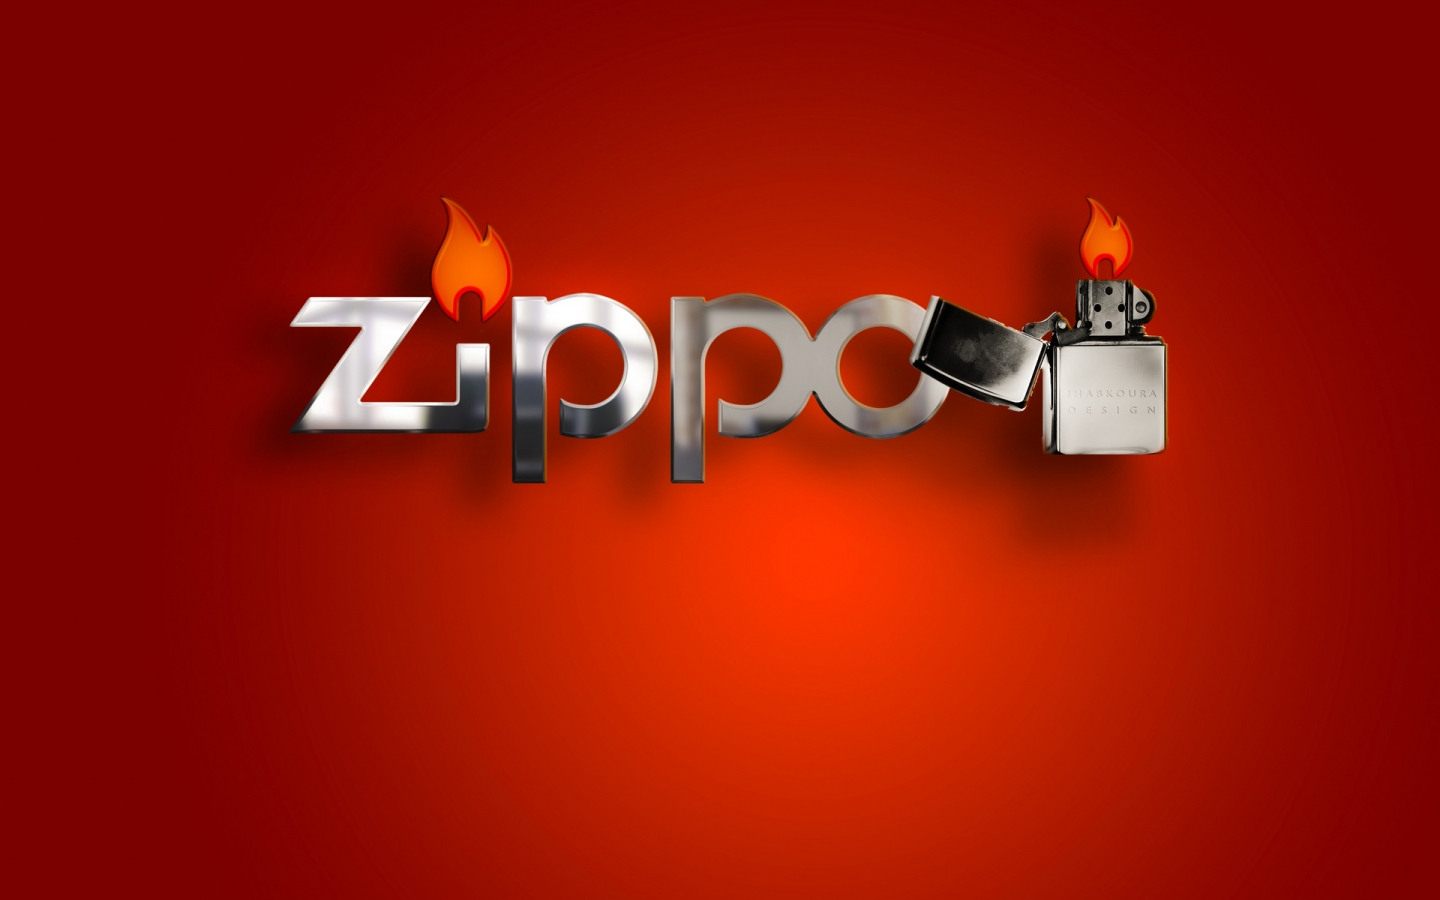 Zippo Lighter for 1440 x 900 widescreen resolution